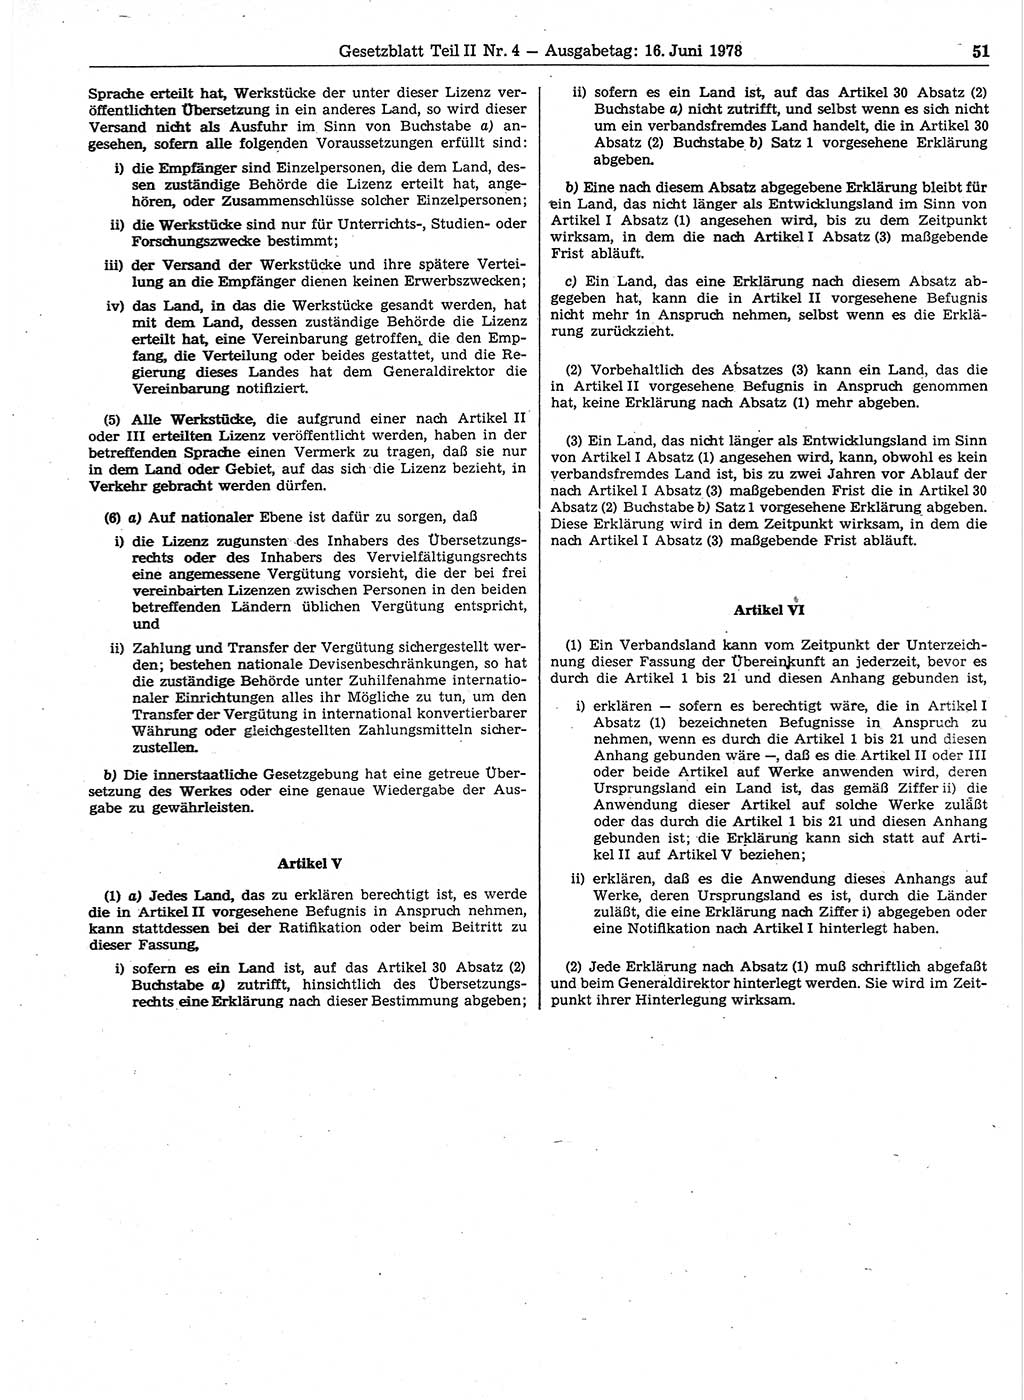 Gesetzblatt (GBl.) der Deutschen Demokratischen Republik (DDR) Teil ⅠⅠ 1978, Seite 51 (GBl. DDR ⅠⅠ 1978, S. 51)